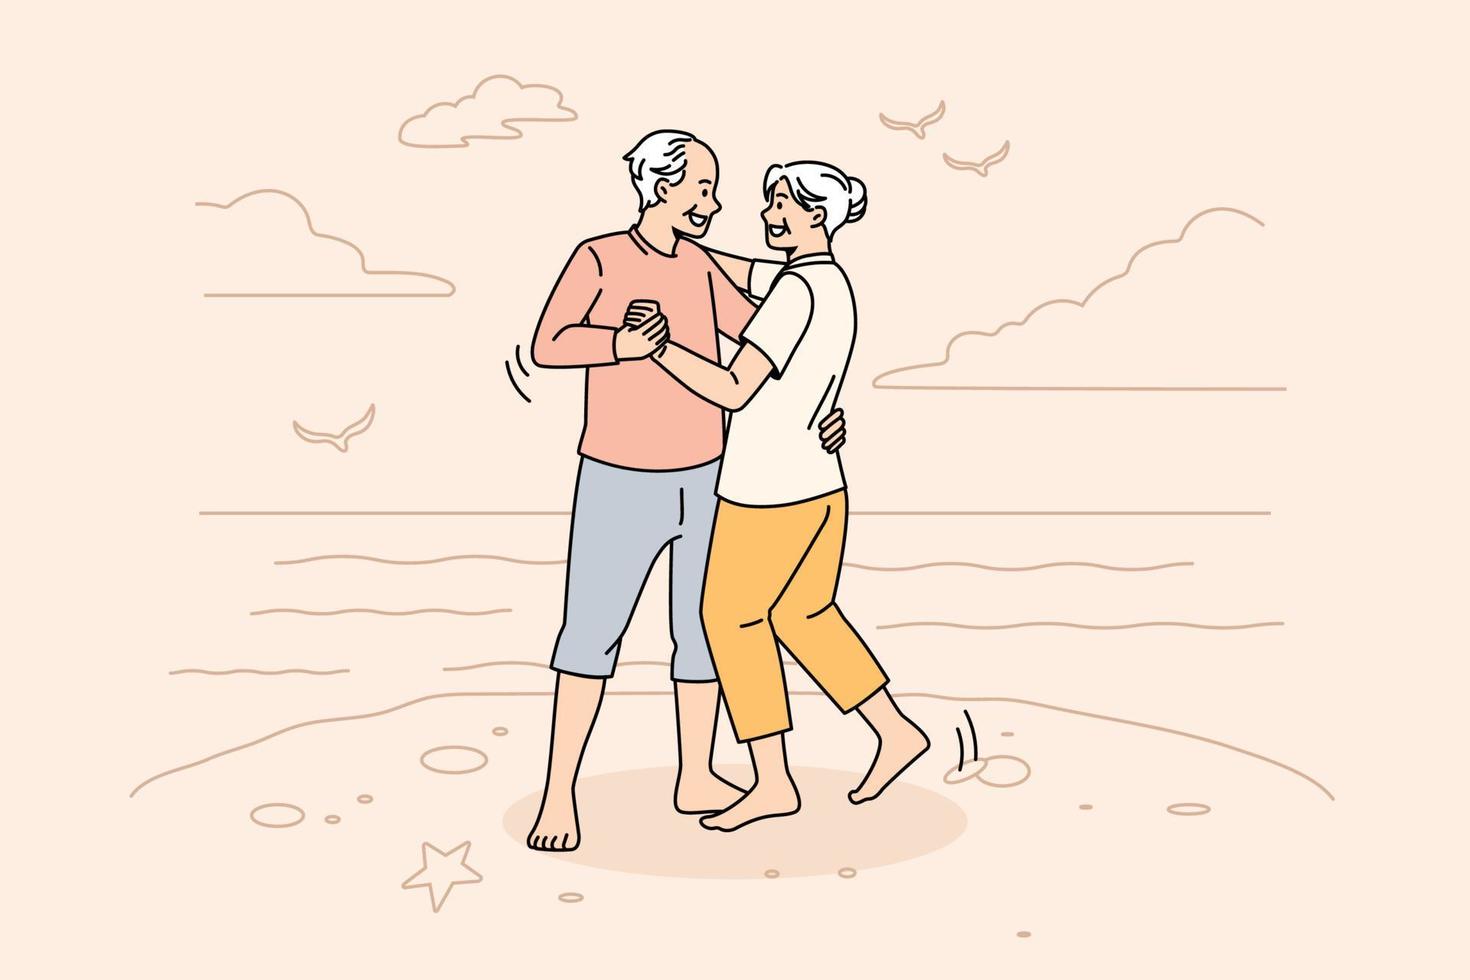 mode de vie actif heureux du concept de personnes matures. souriant heureux couple de personnes âgées positif homme et femme debout dansant et profitant du week-end sur la plage illustration vectorielle vecteur